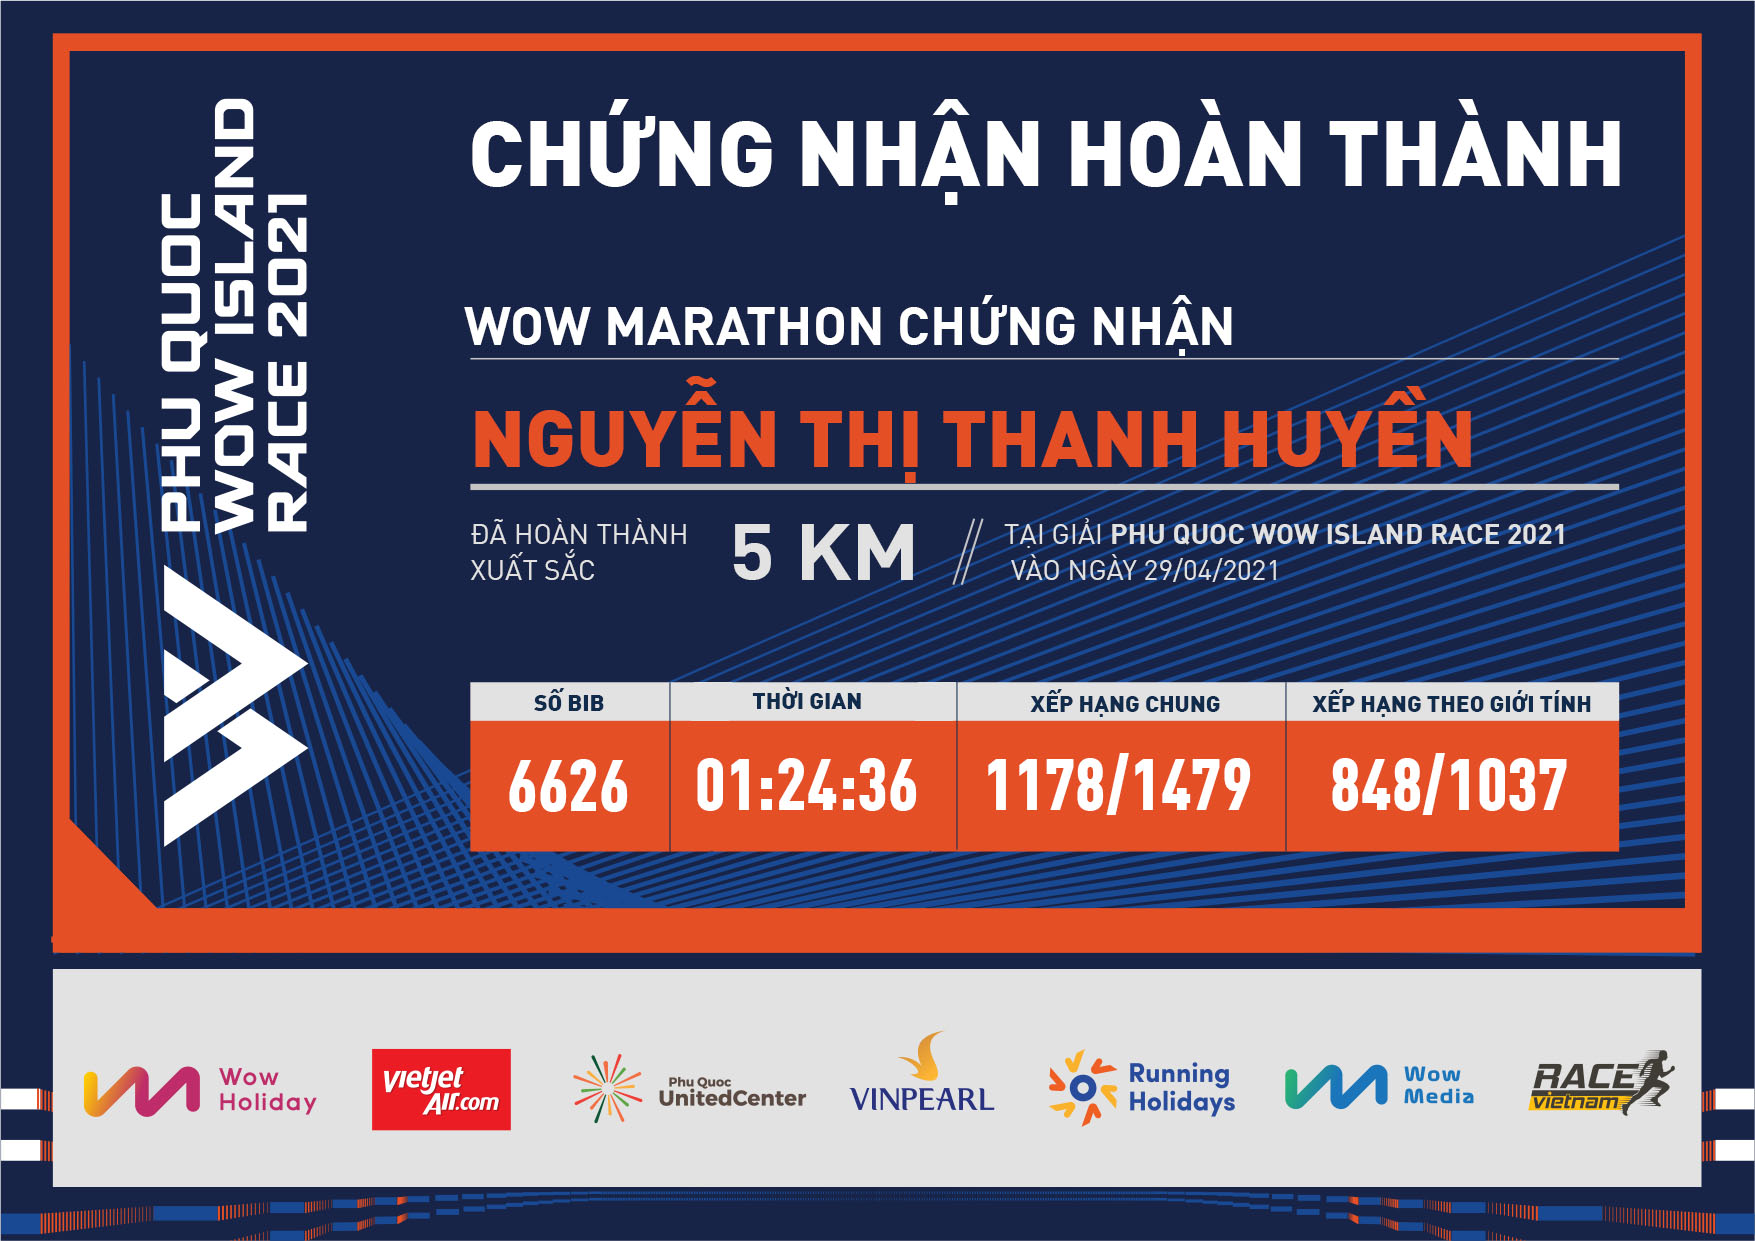 6626 - Nguyễn Thị Thanh Huyền